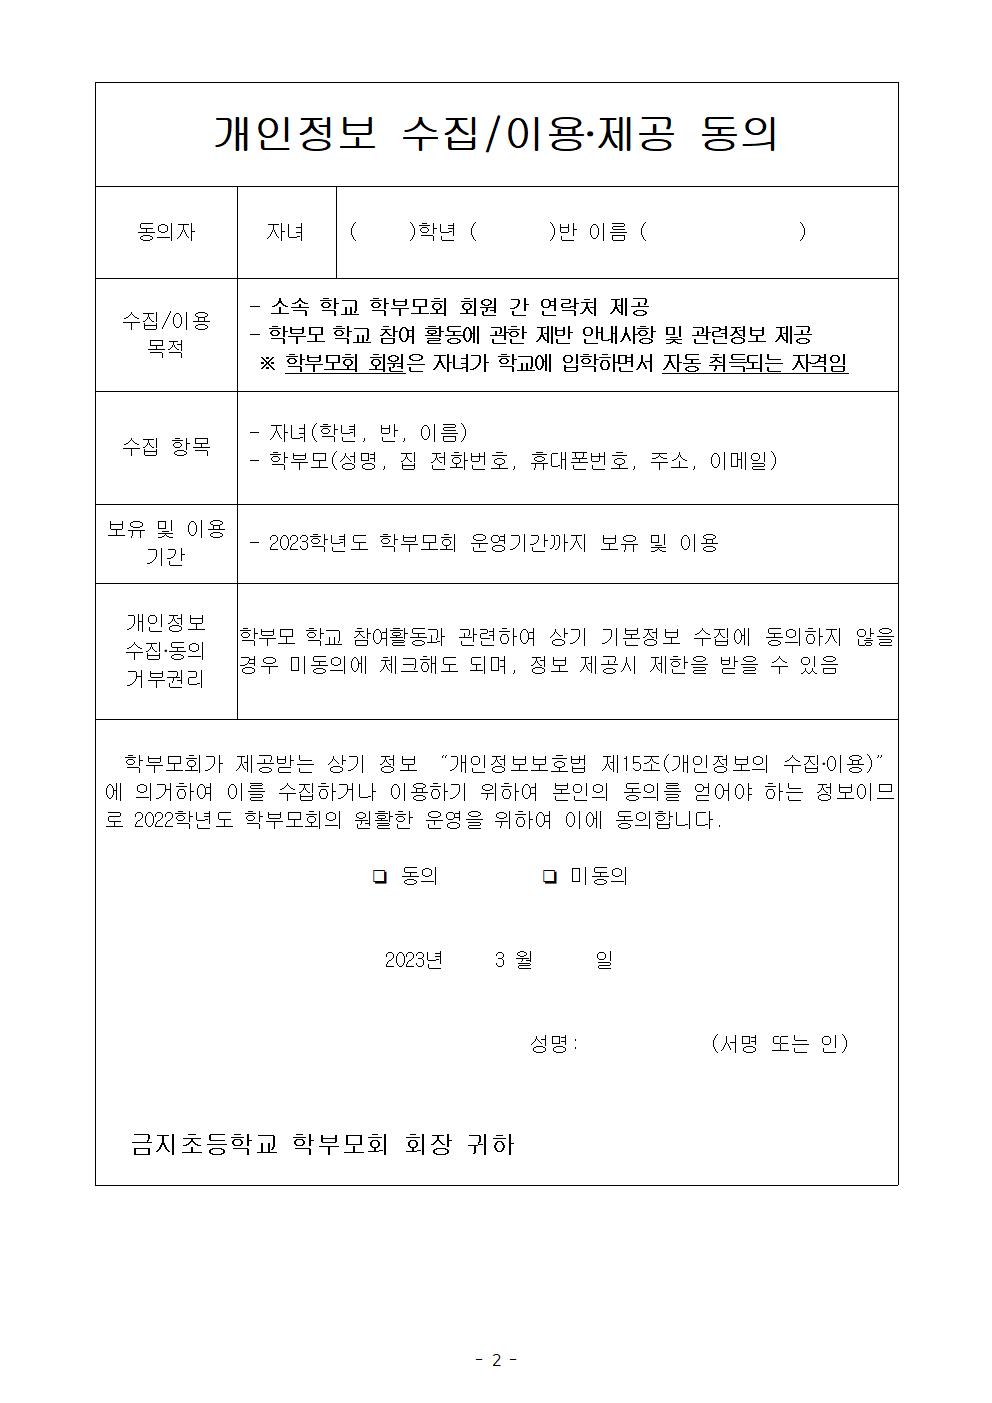 학부모회 참여 개인정보 수집 동의 안내장 (1)002